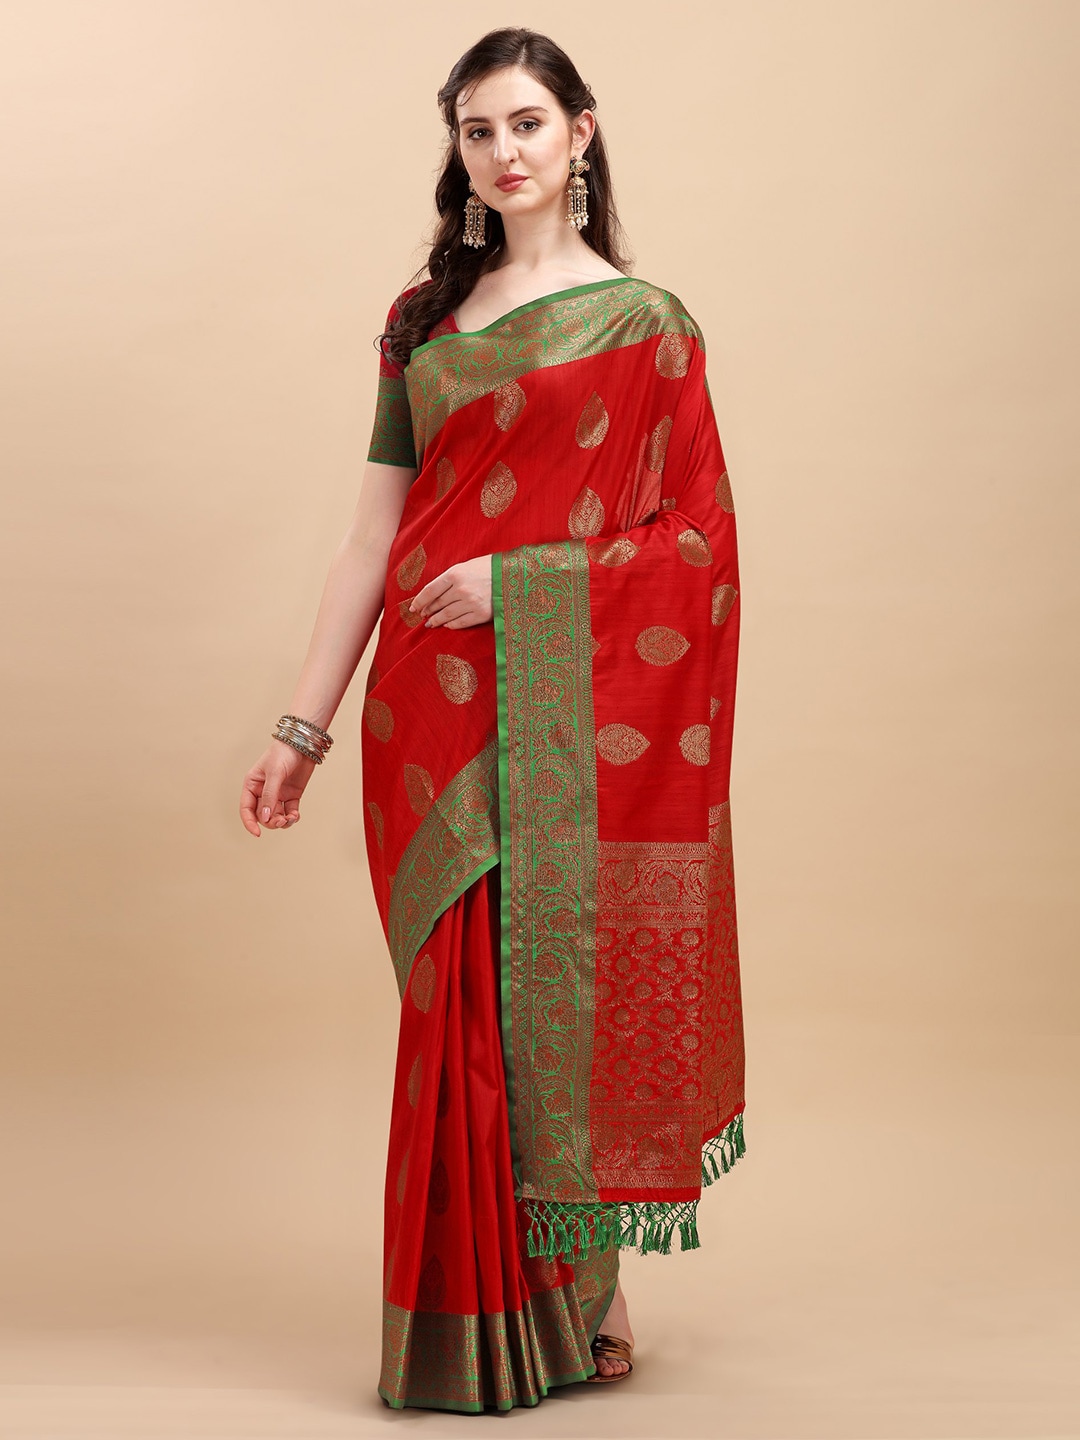 VISHNU WEAVES Red & Green Ethnic Motifs Zari Silk Blend Banarasi Saree Price in India